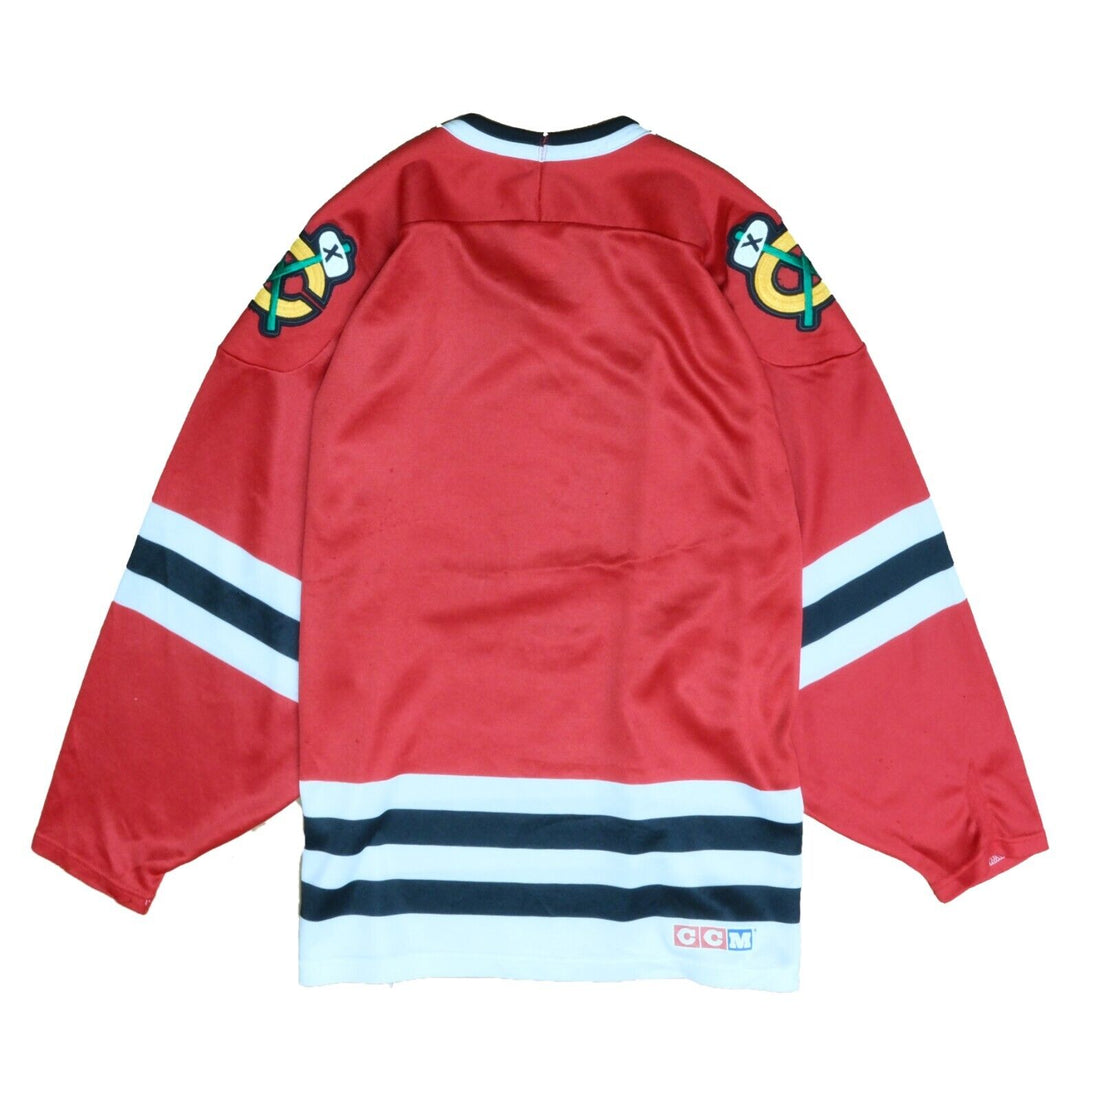 Vintage Chicago Blackhawks CCM Maska Hockey Jersey Size Medium Red 90s NHL